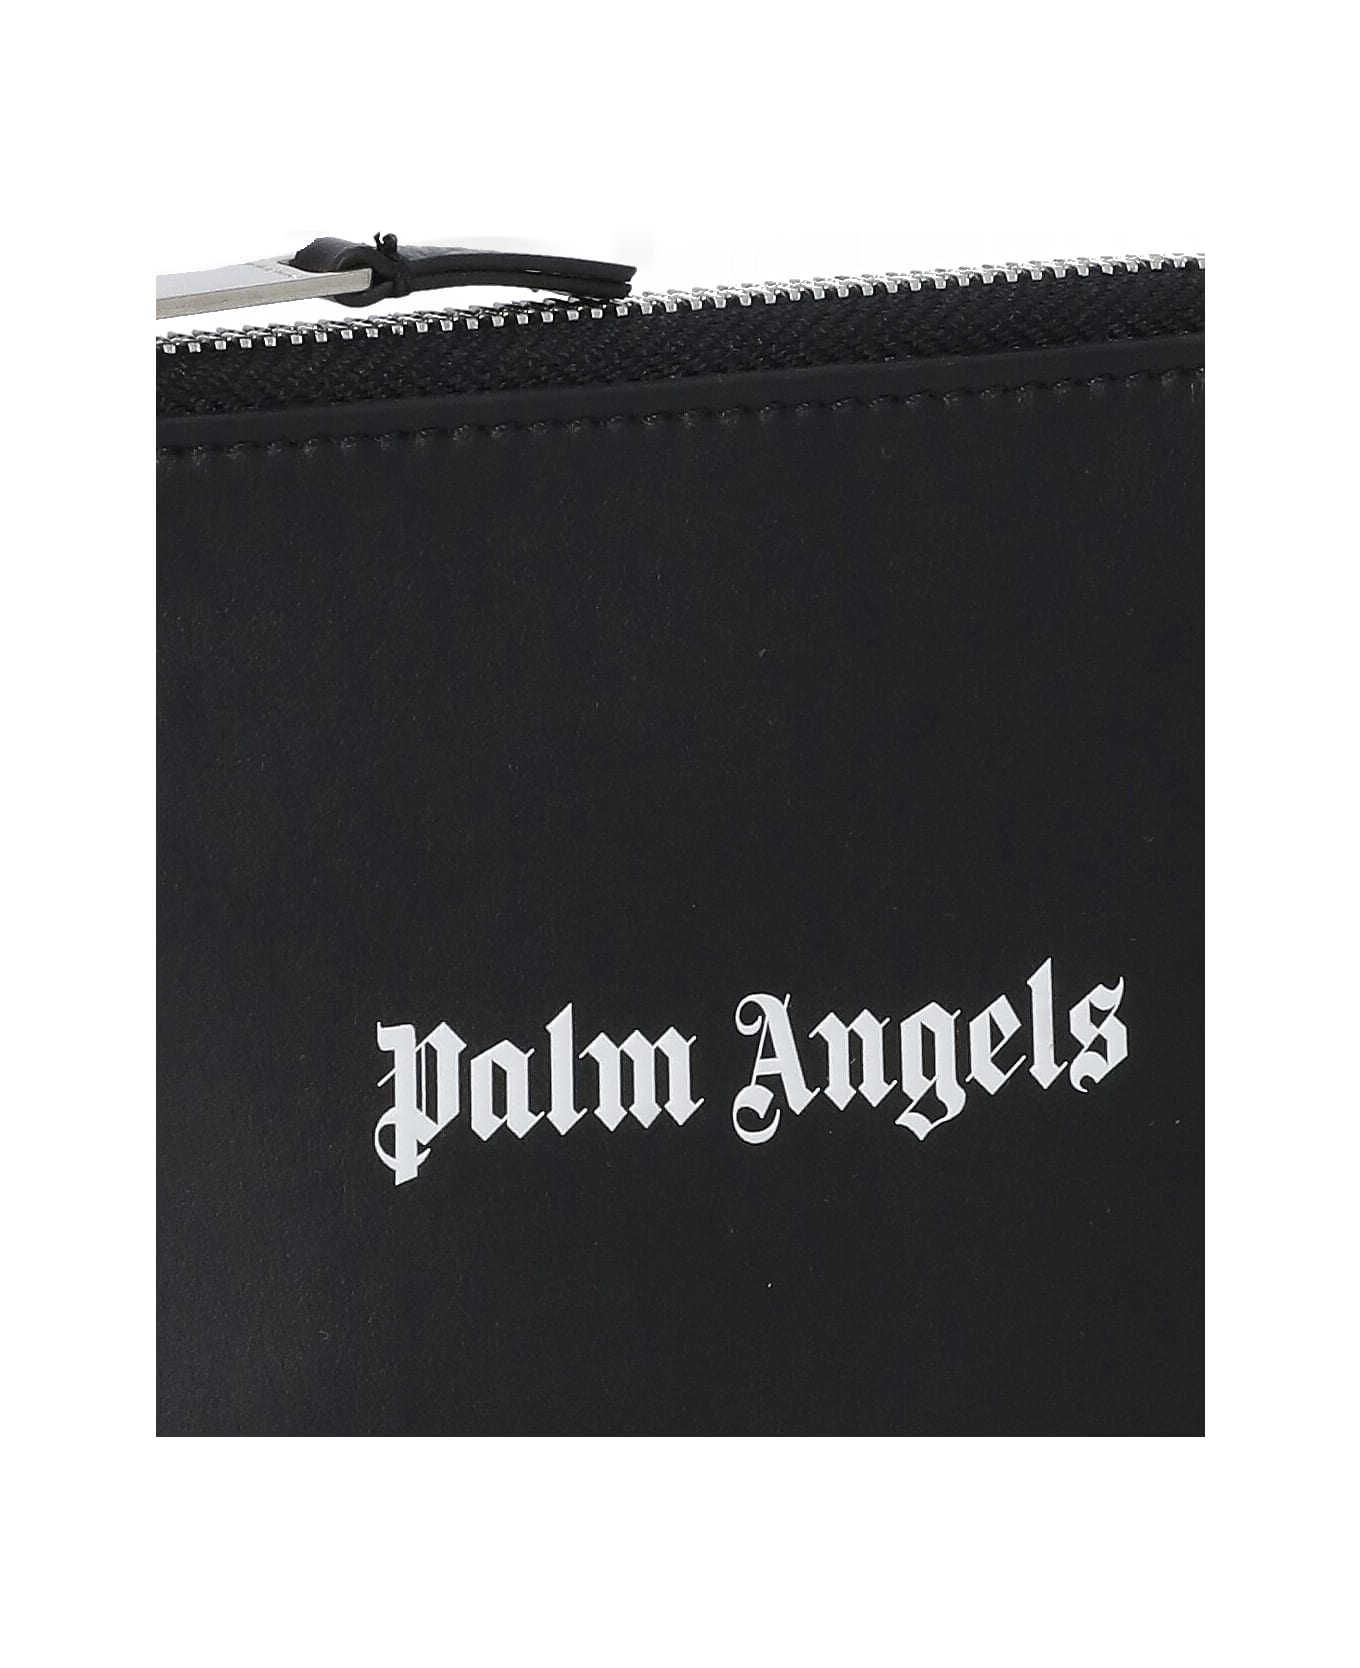 Palm Angels Logoed Card Holder - Black